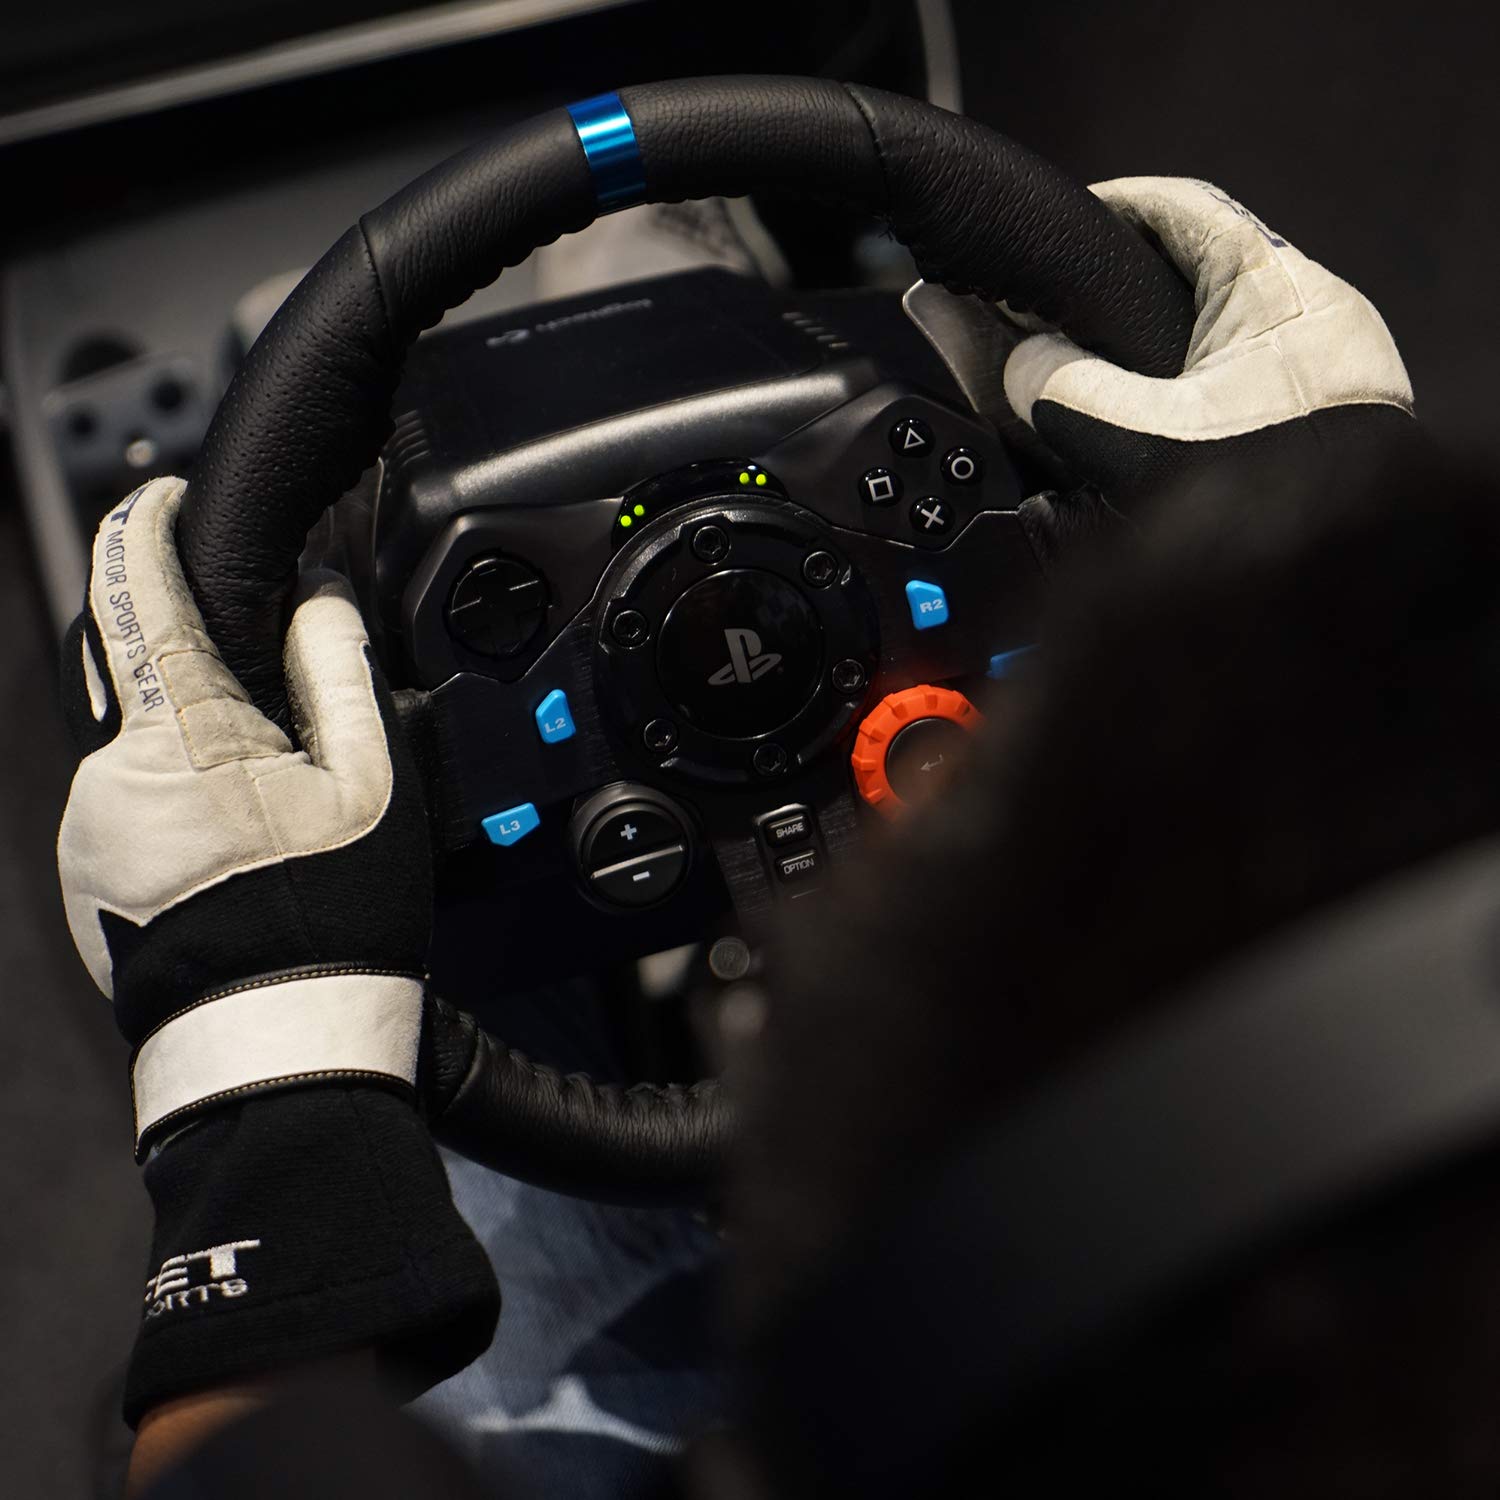 Logitech G29 Steering Wheel for PS5/PC Unboxing - ASMR 